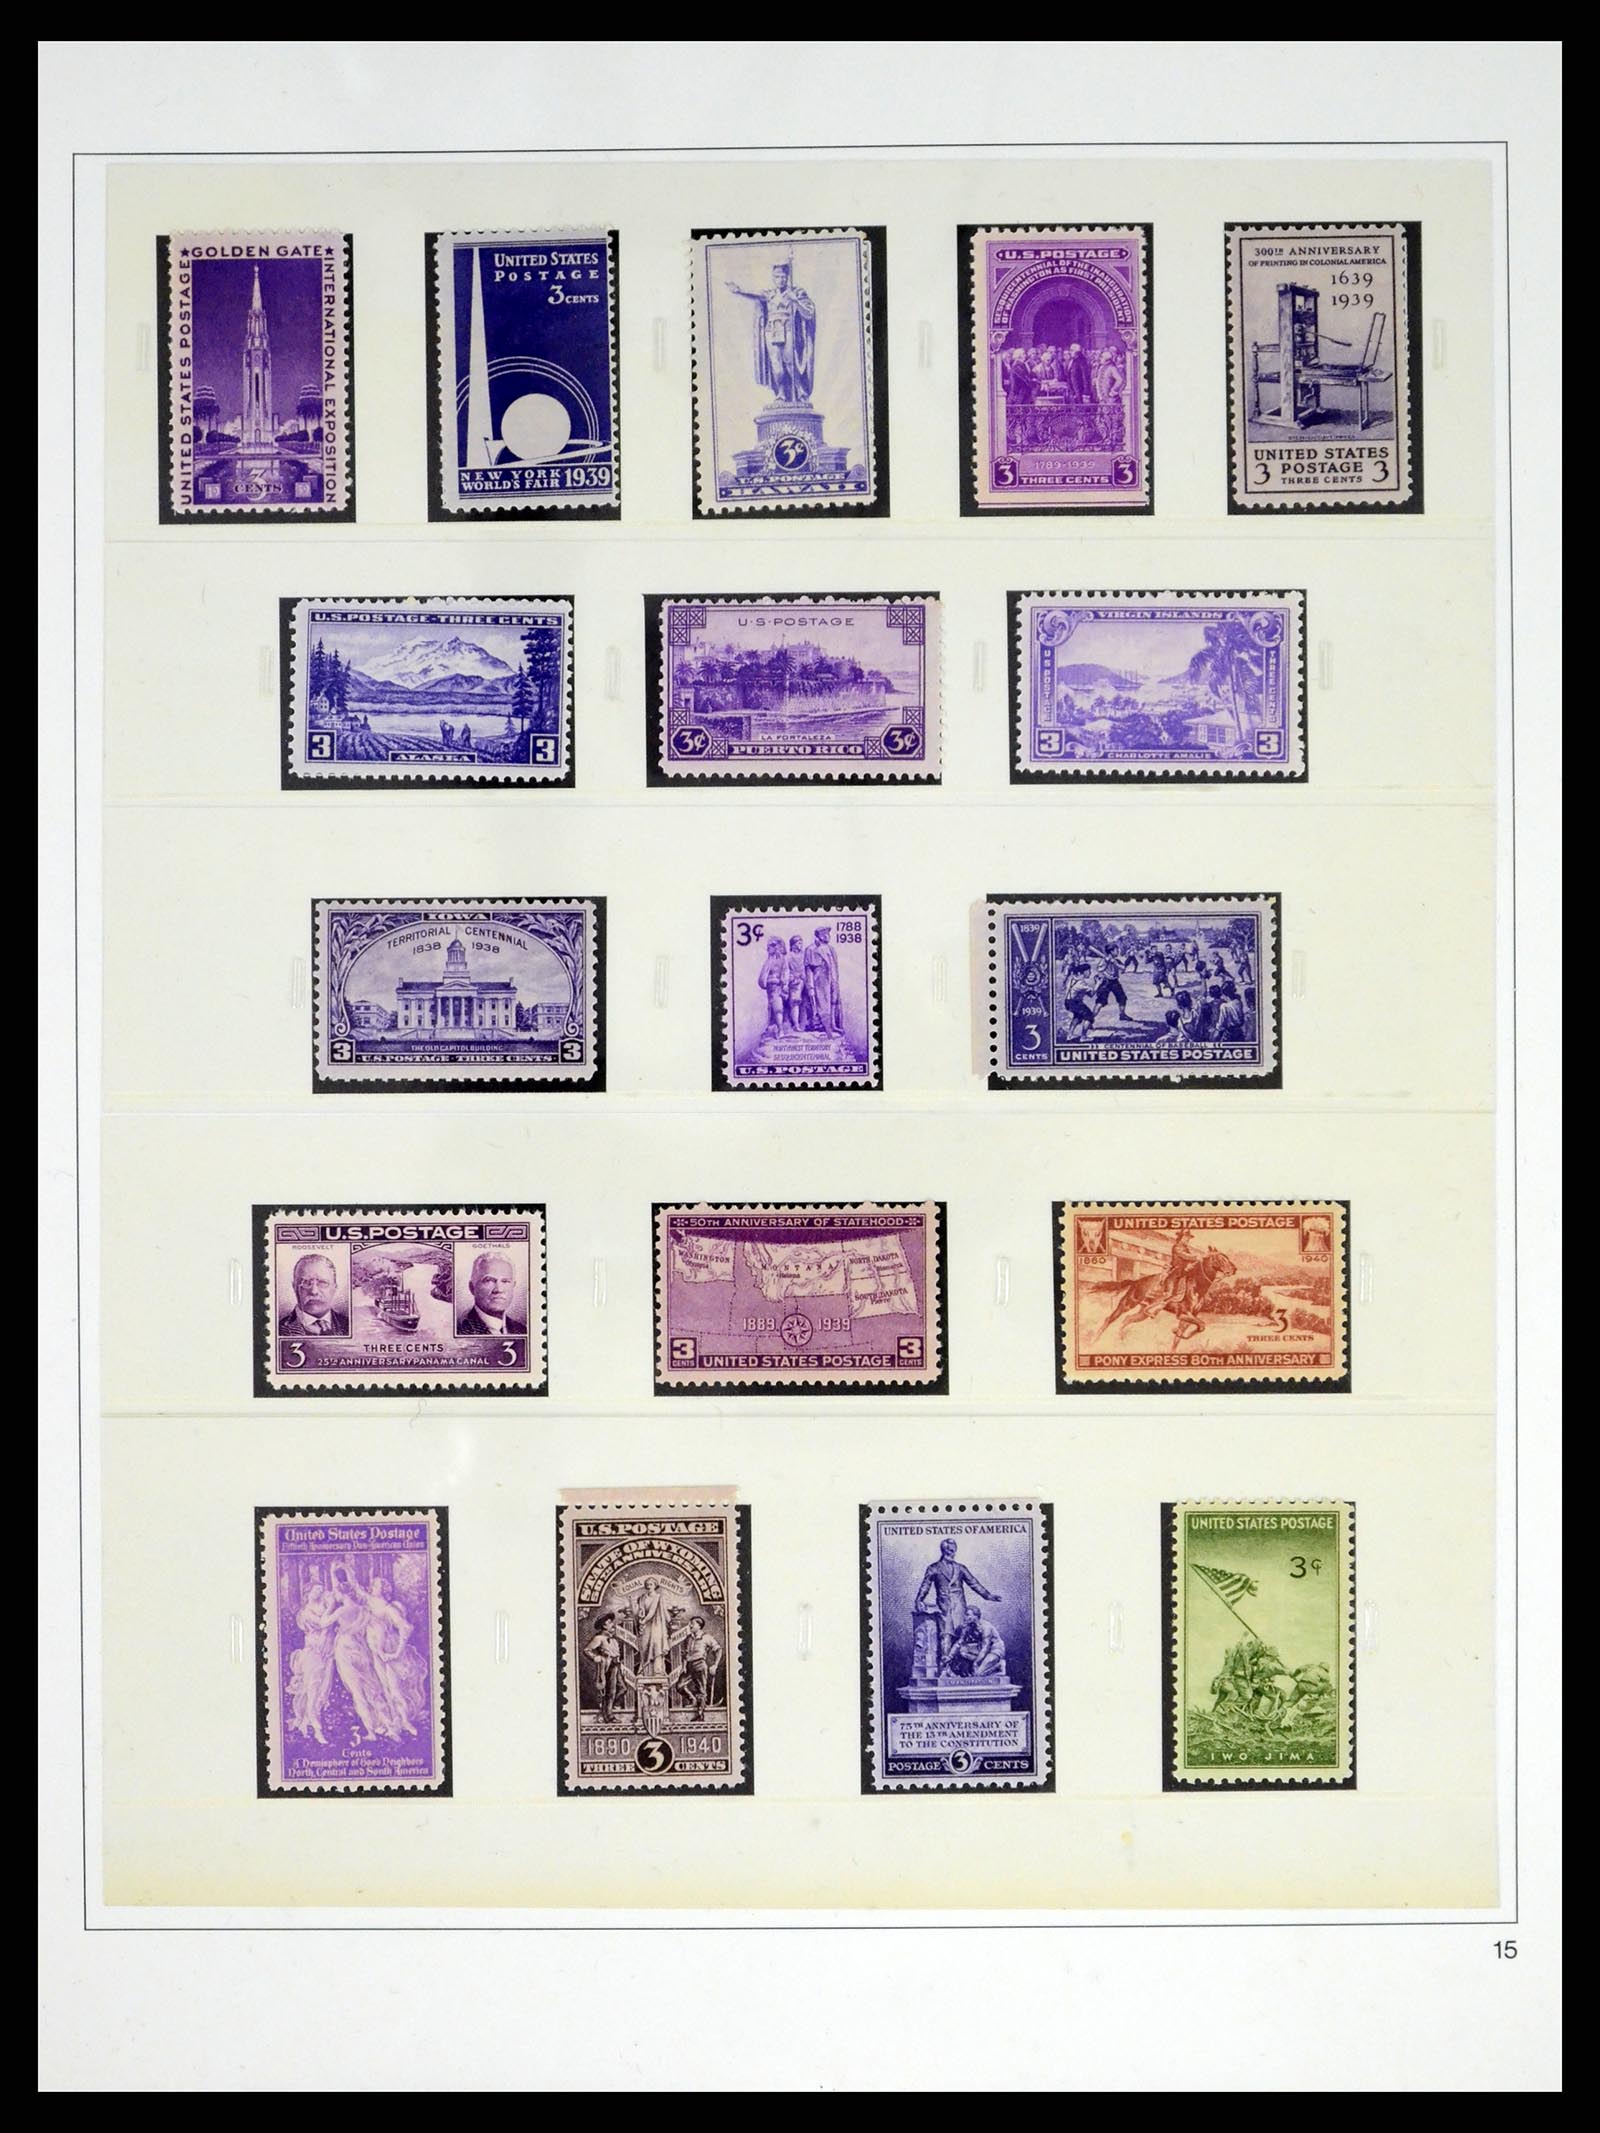 37551 051 - Stamp collection 37551 USA 1851-2001.